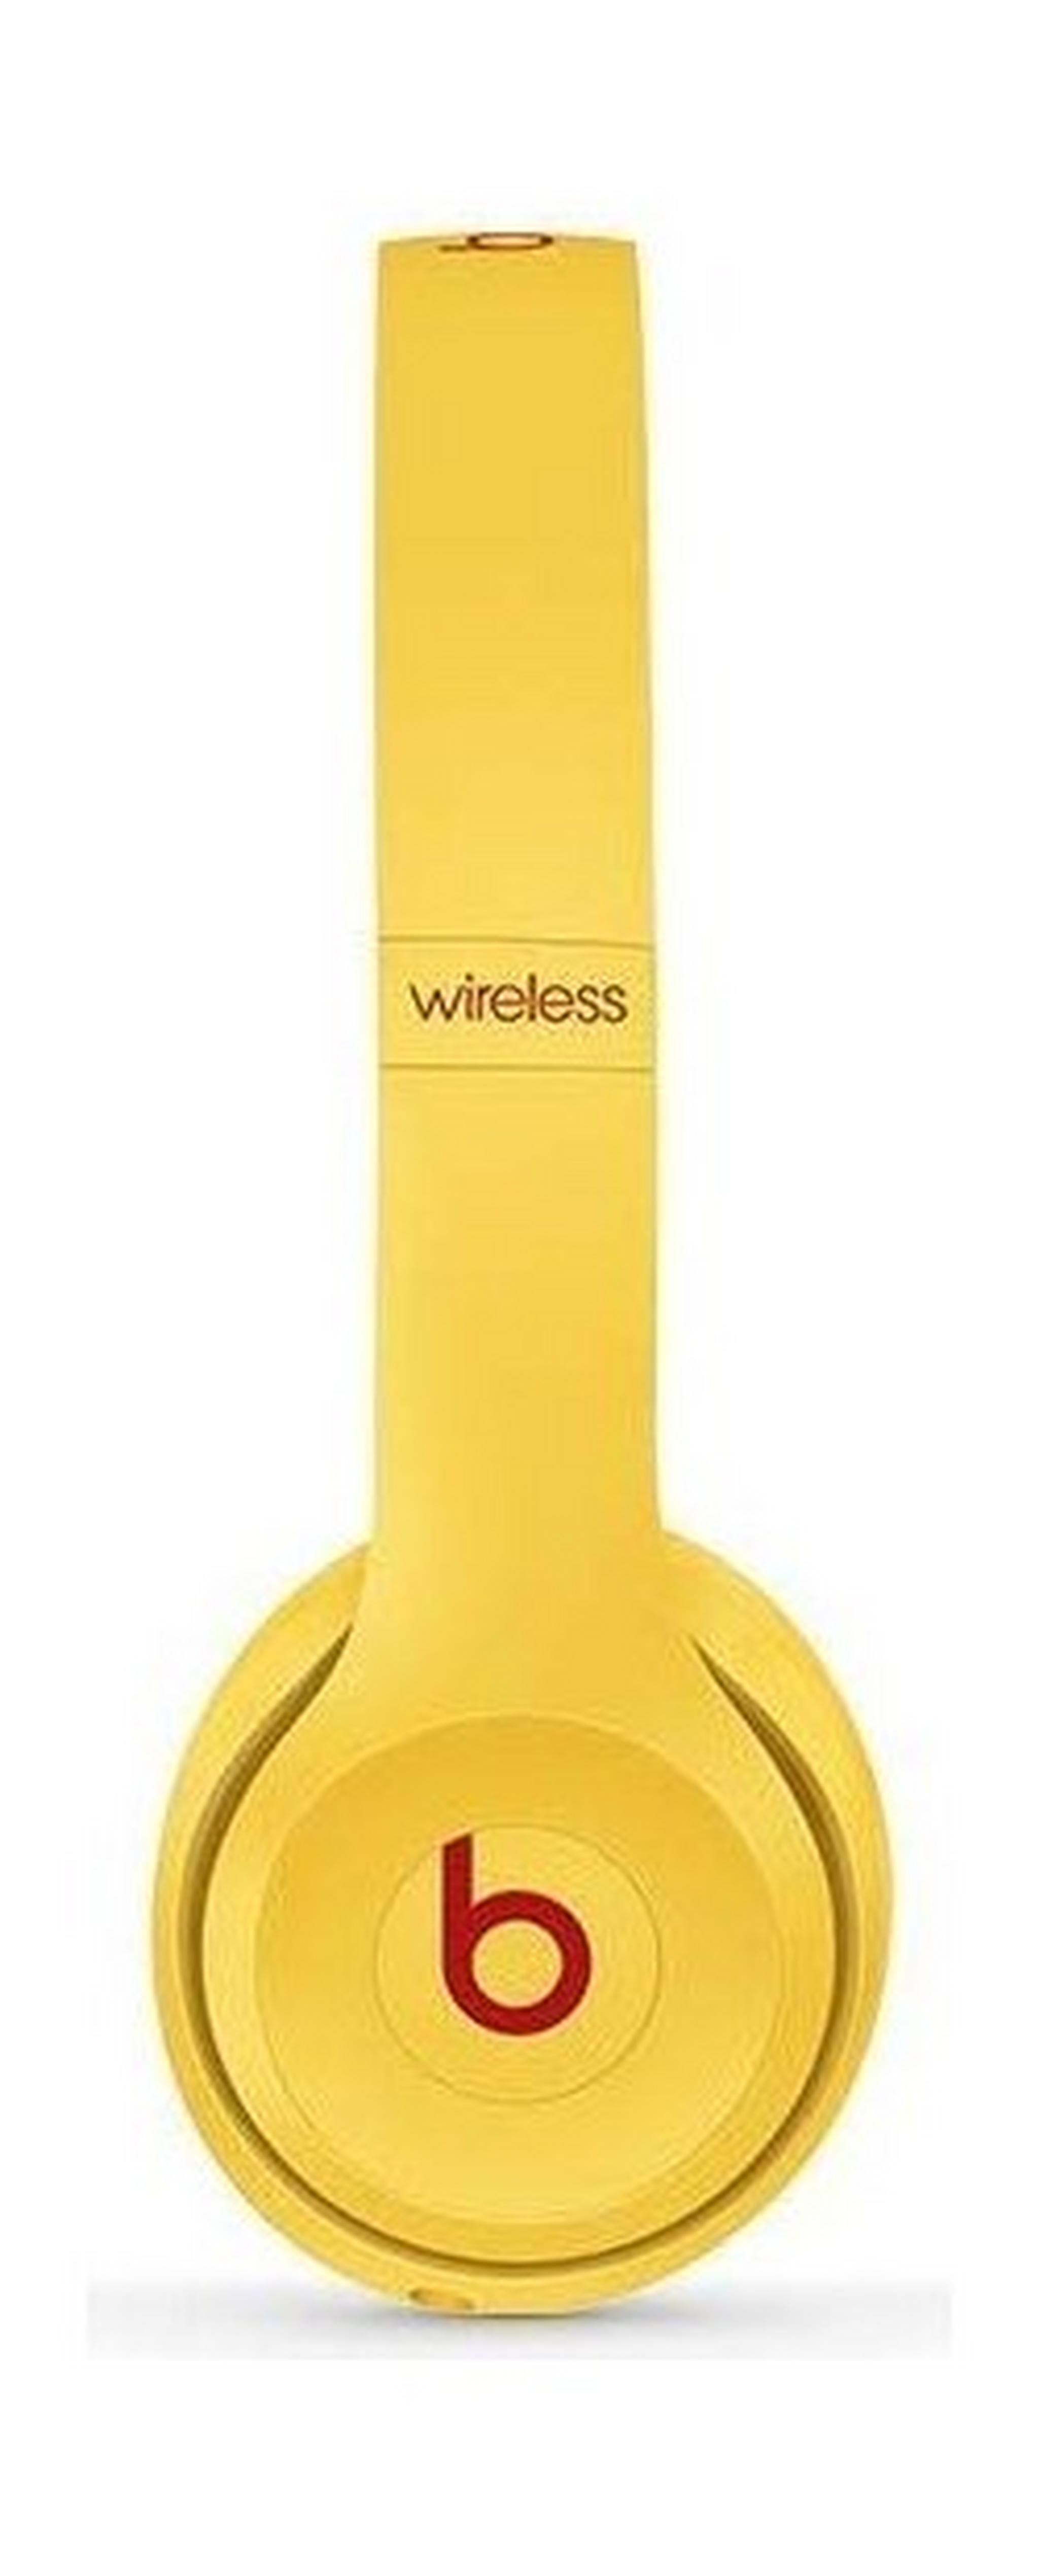 سماعة الرأس اللاسلكية سولو٣ من بيتس - إصدار بيتس كلوب - أصفر